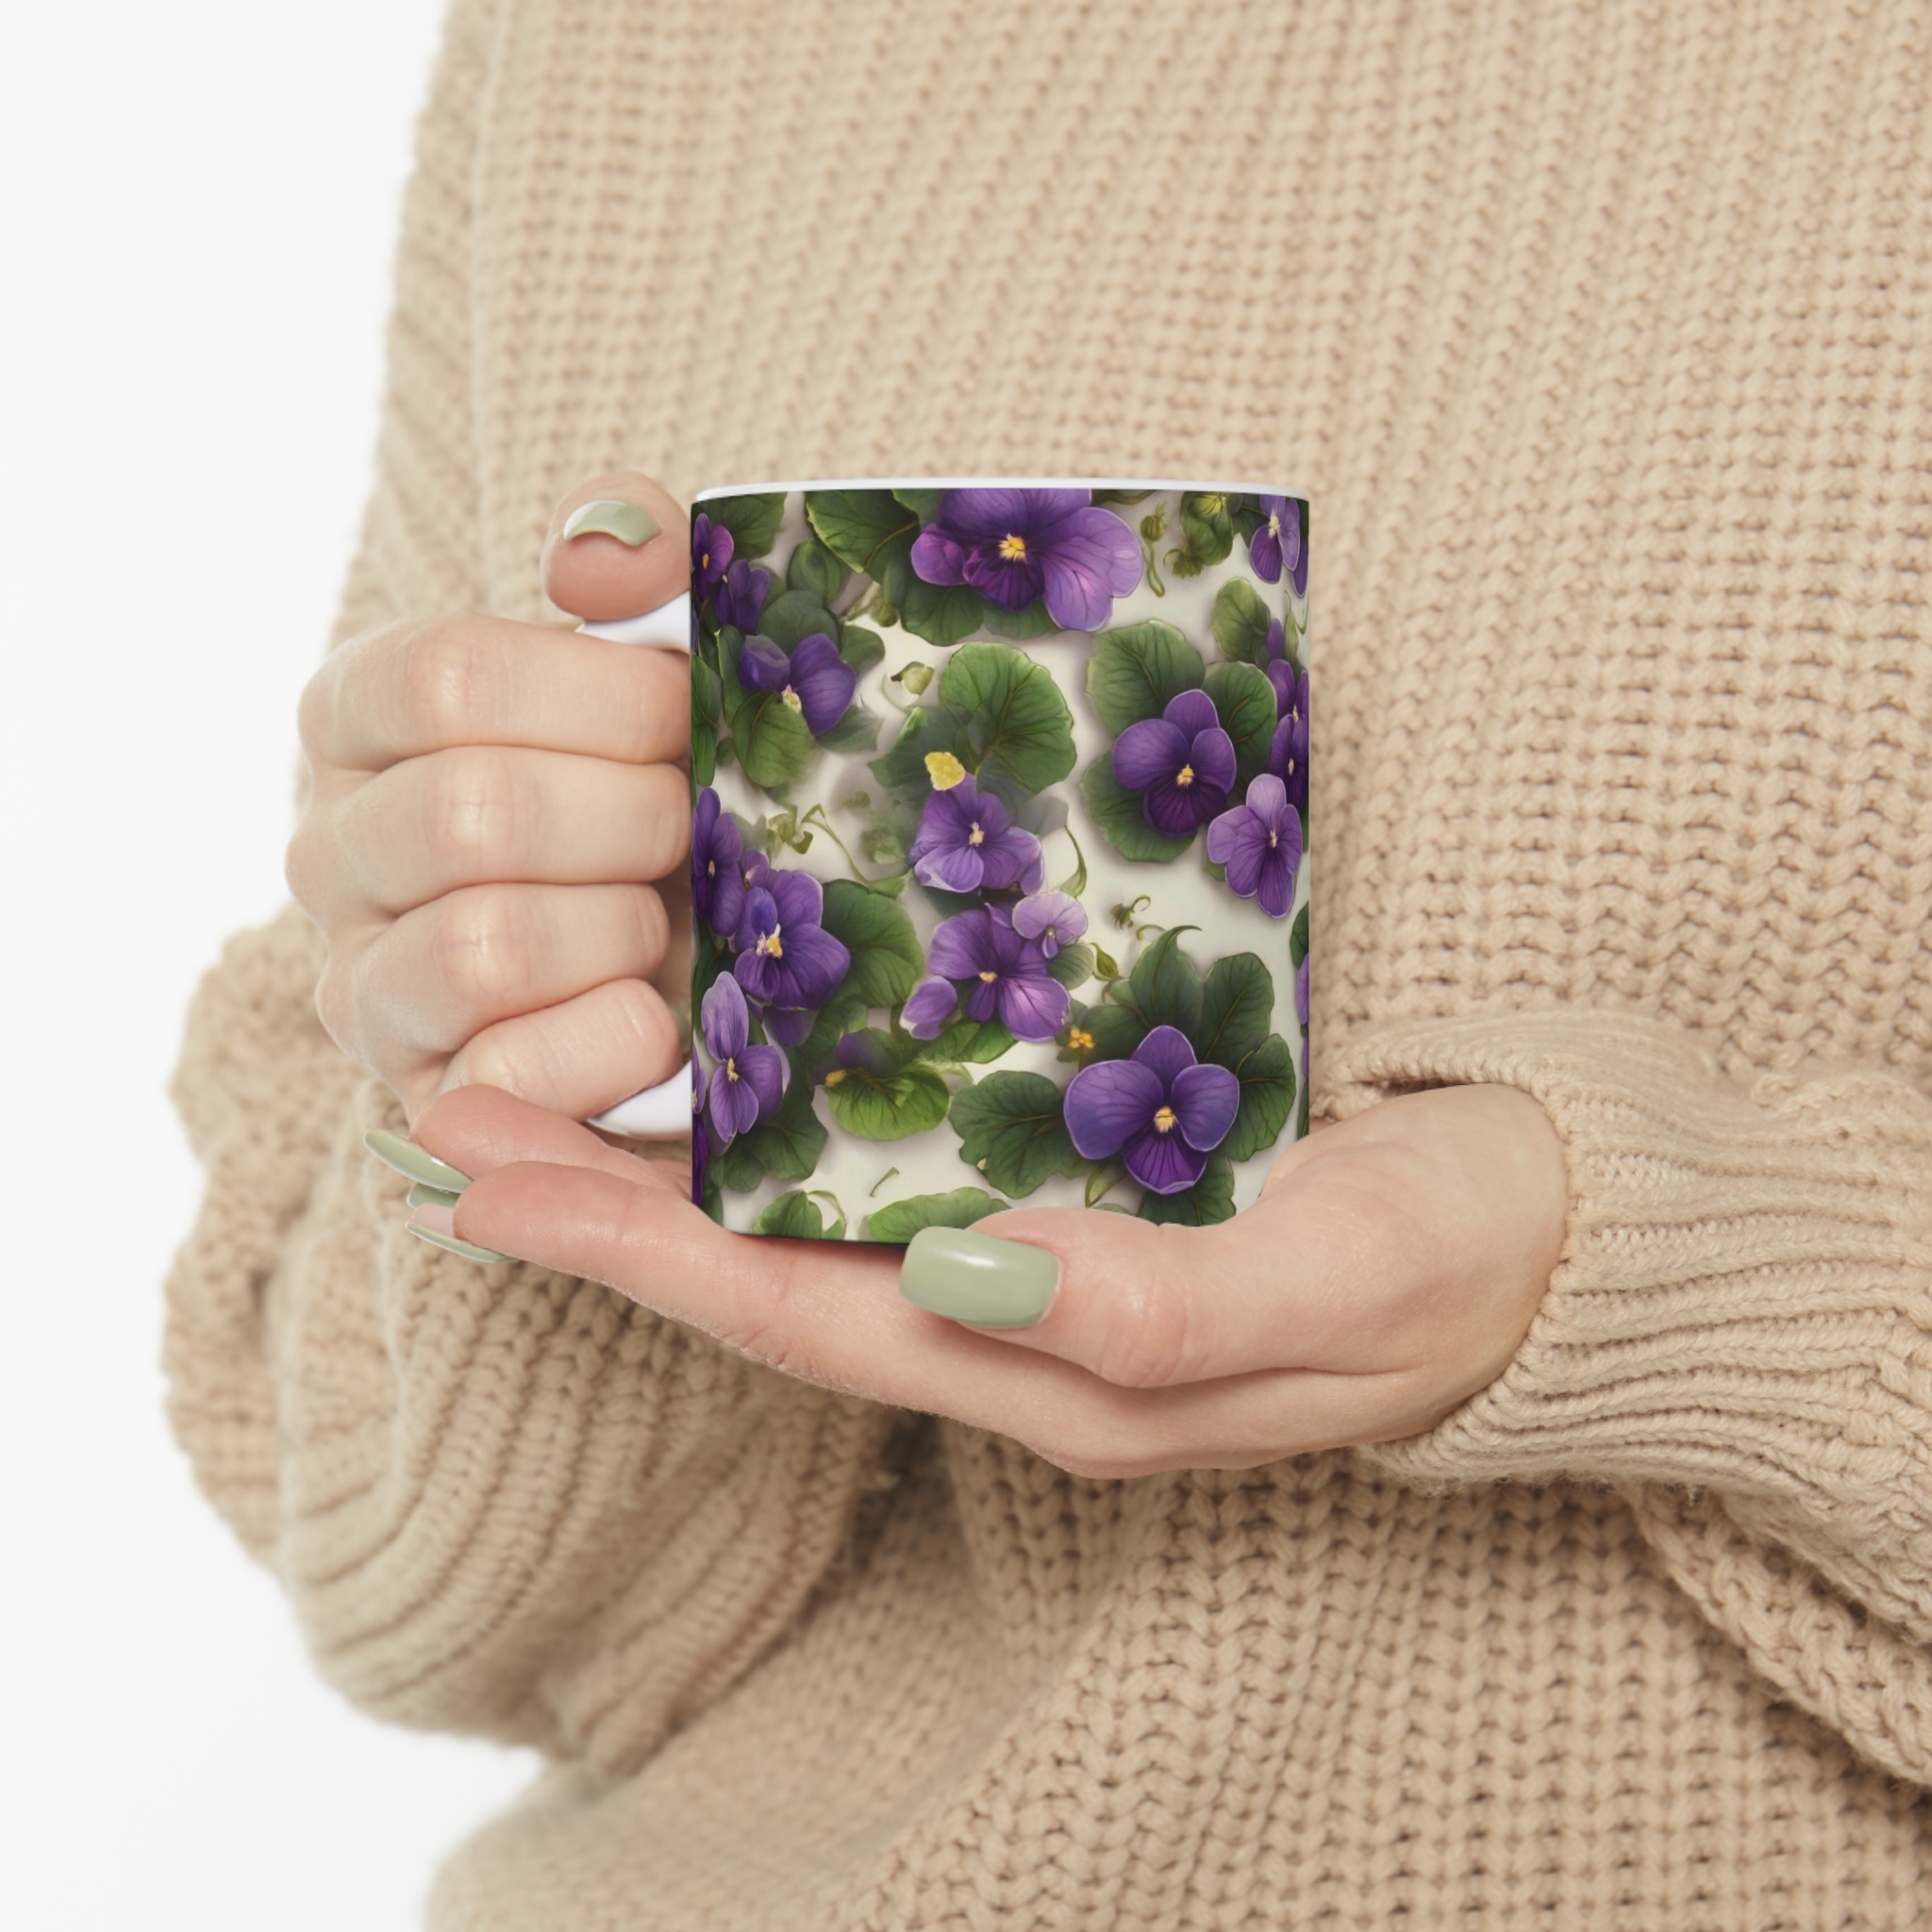 Love Of Violets Coffee Mug Being Held